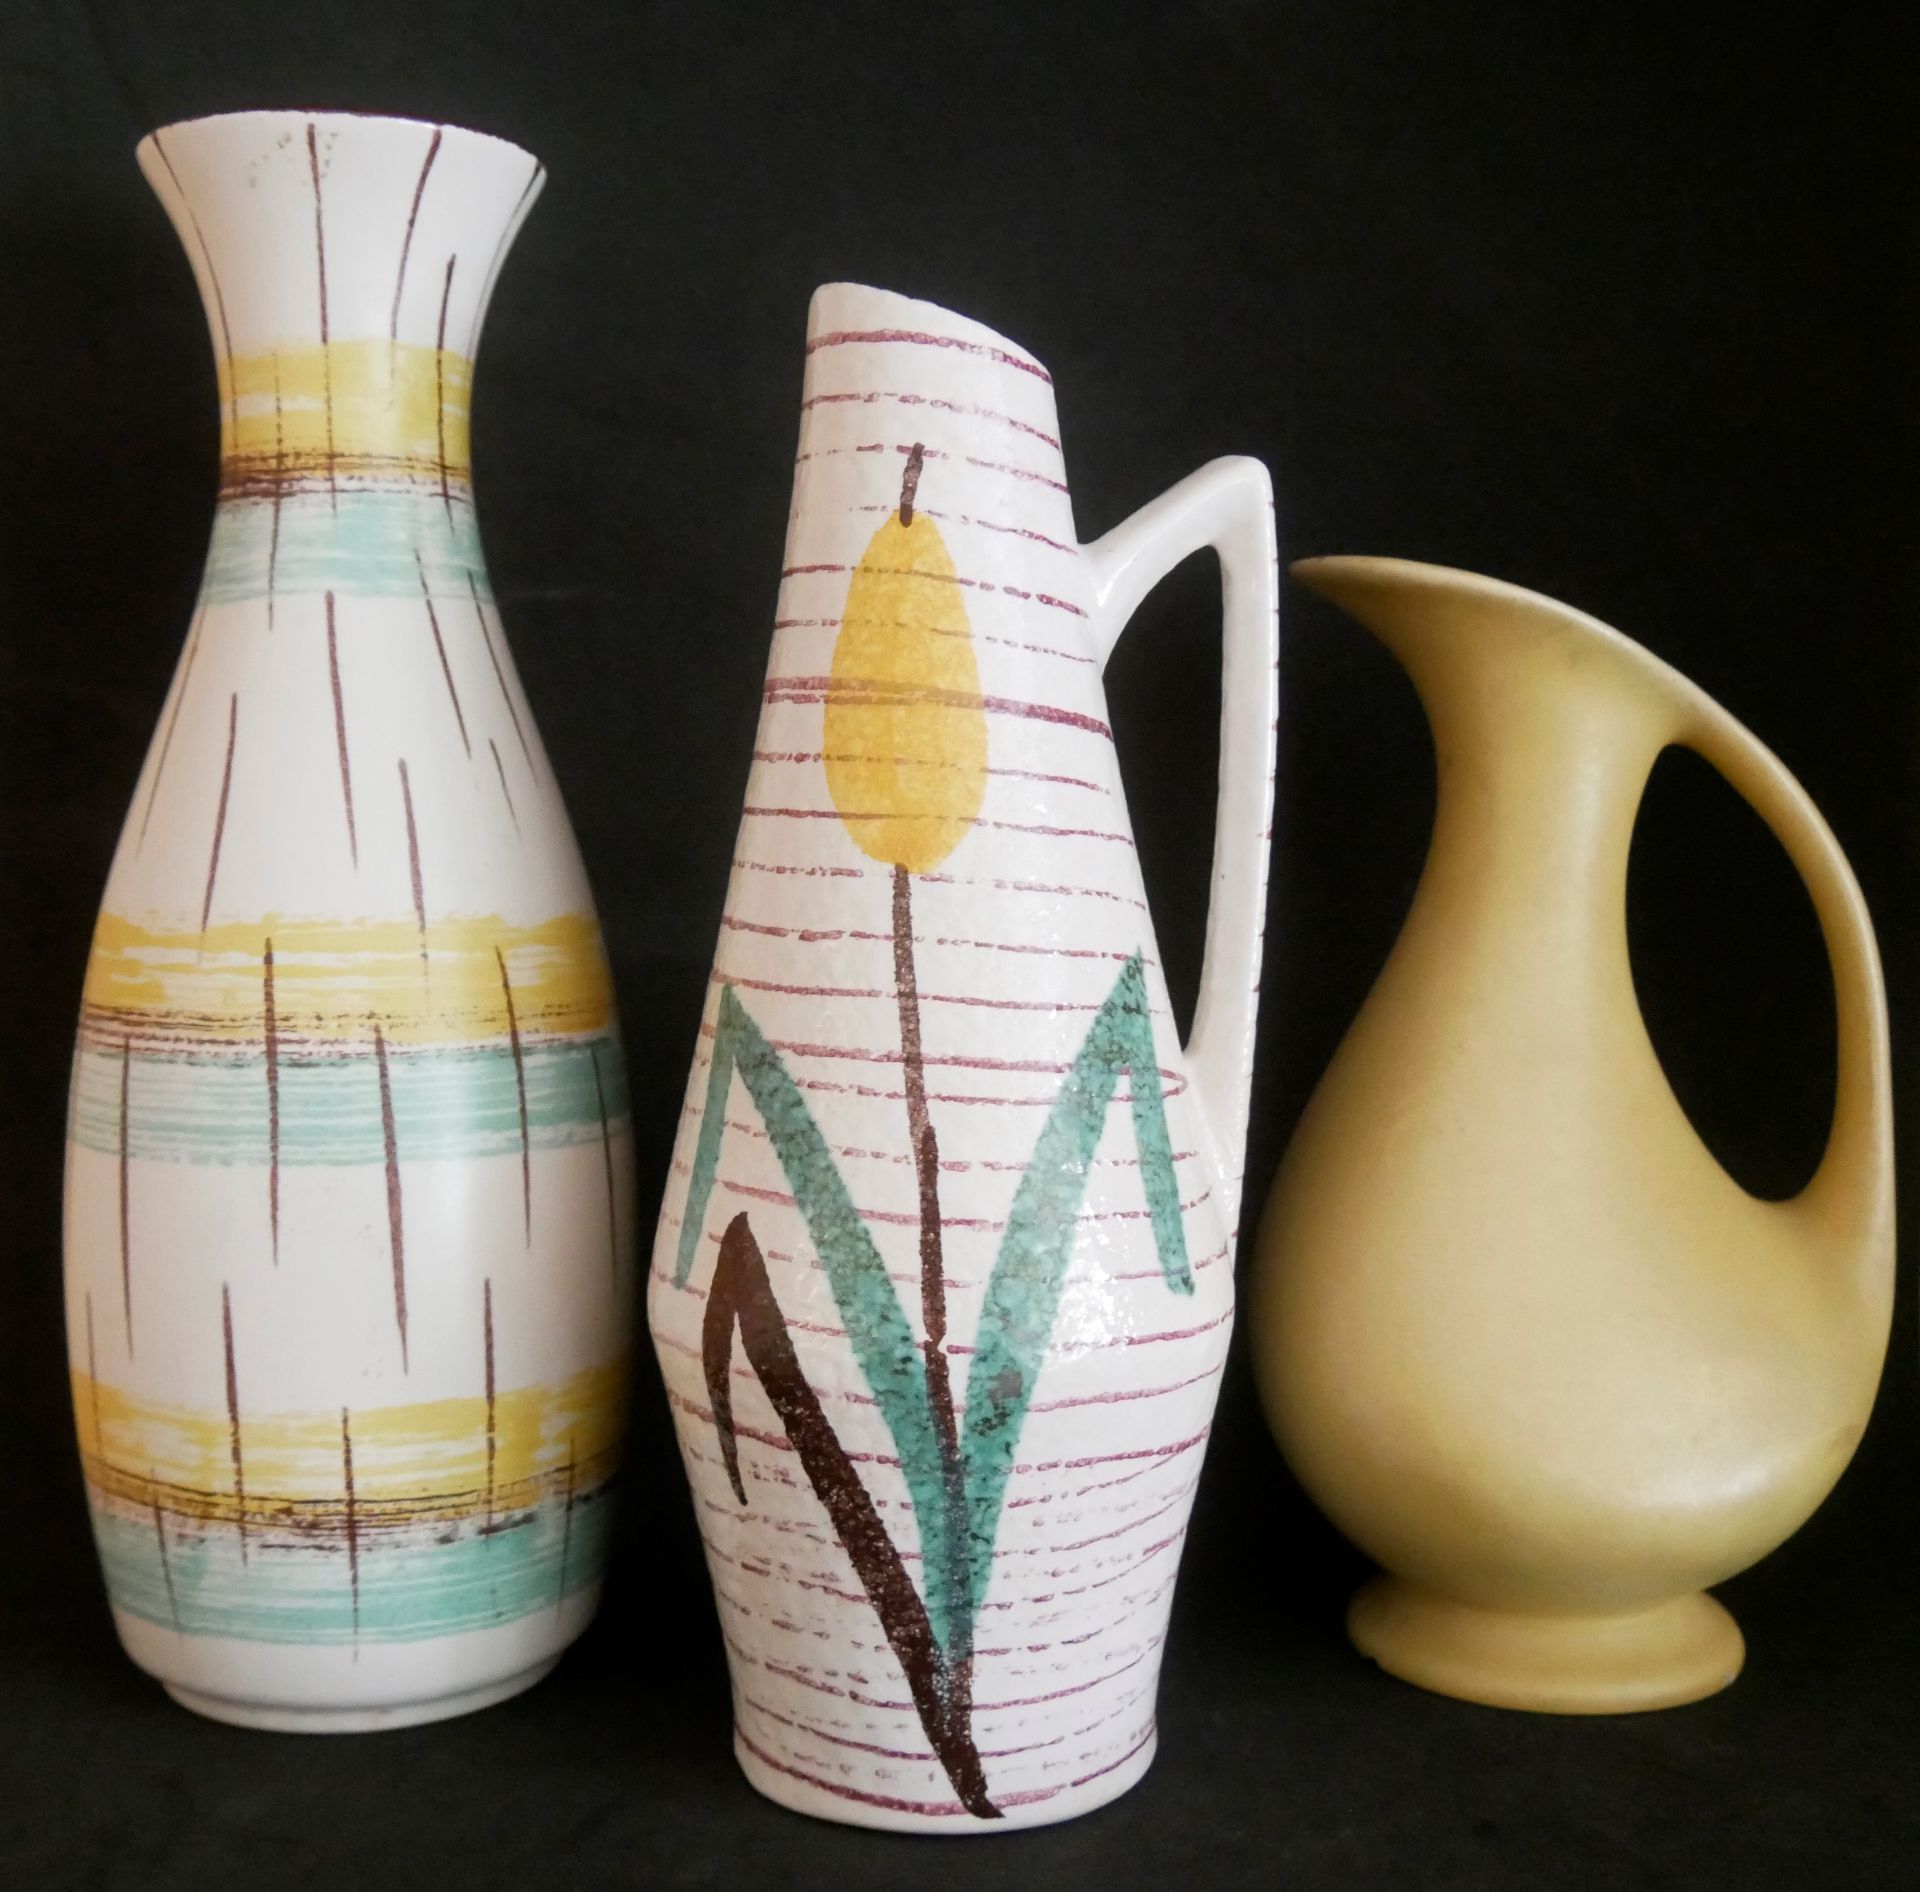 3 Keramik Vasen 60-70er Jahre, verschiedene Größen und Ausführungen. Bitte besichtigen